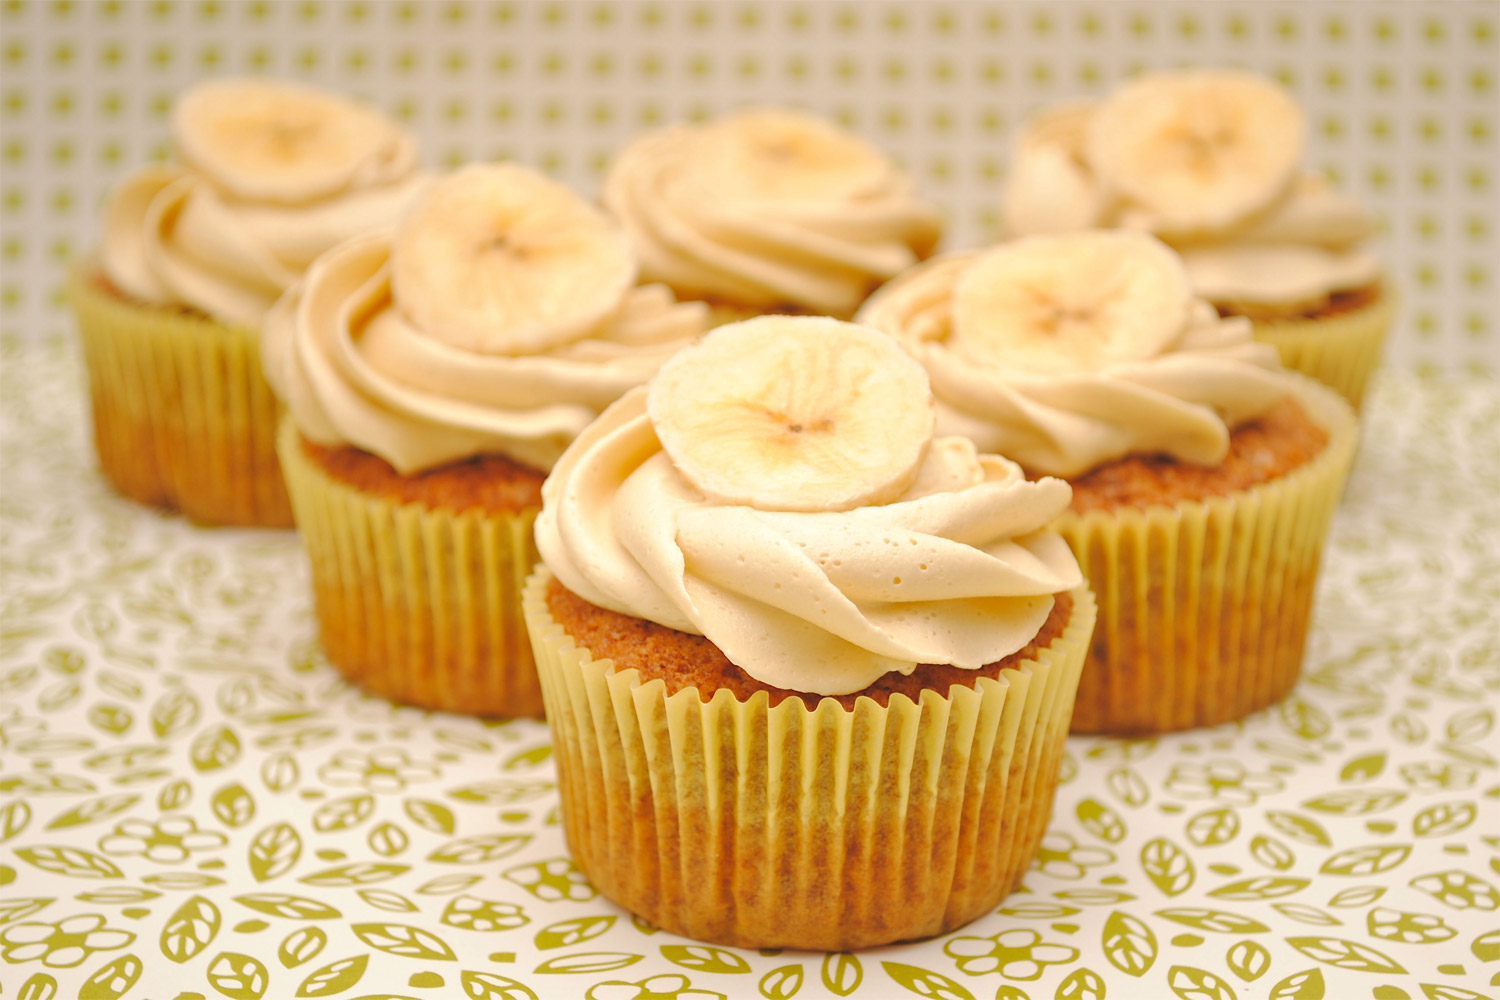 Cupcakes de plátano (banana) 